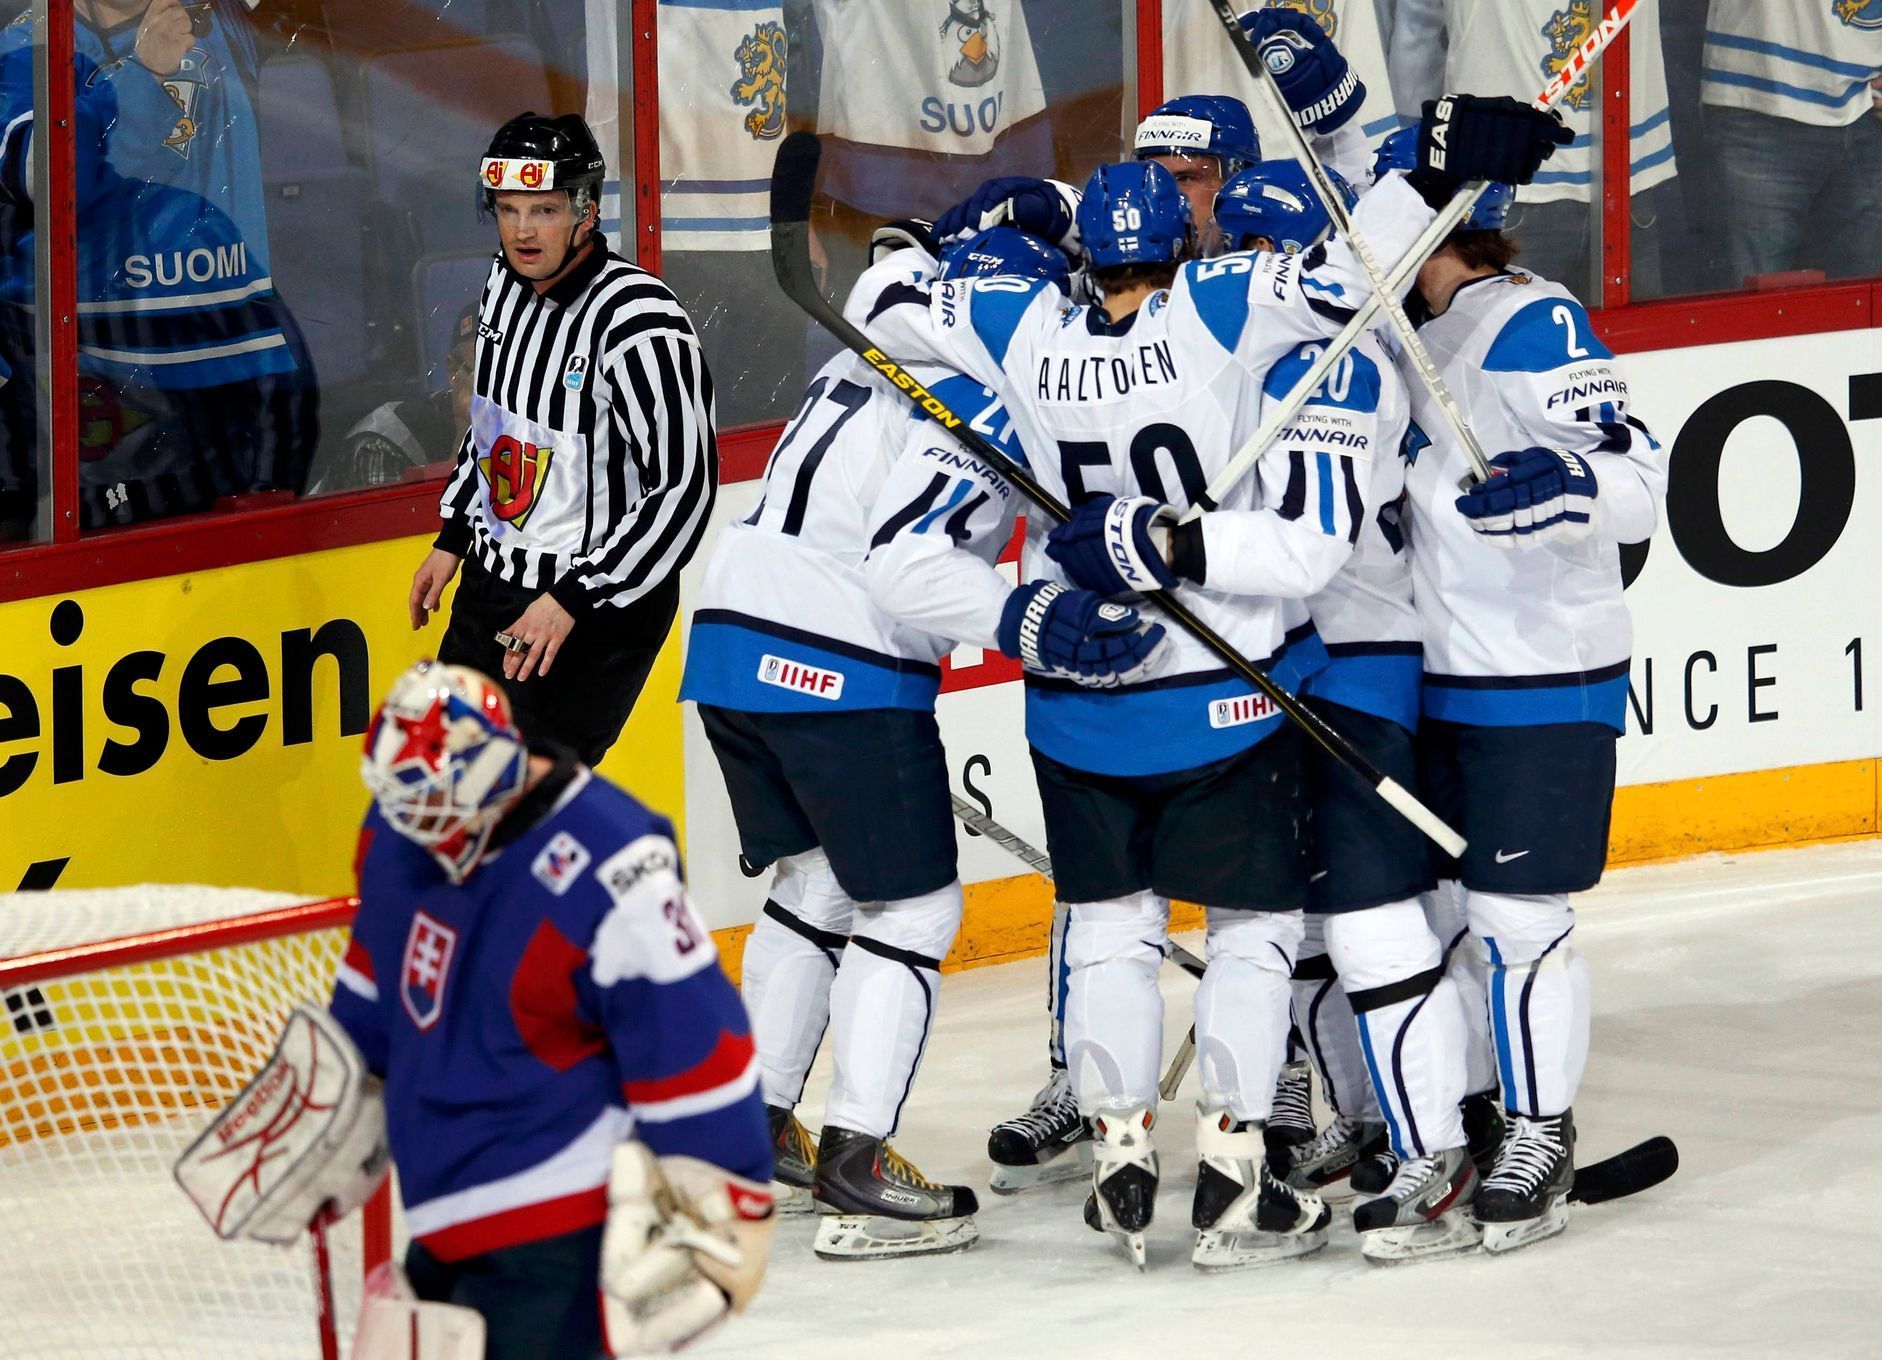 Hokej, MS 2013, Finsko - Slovensko: Finové slaví gól